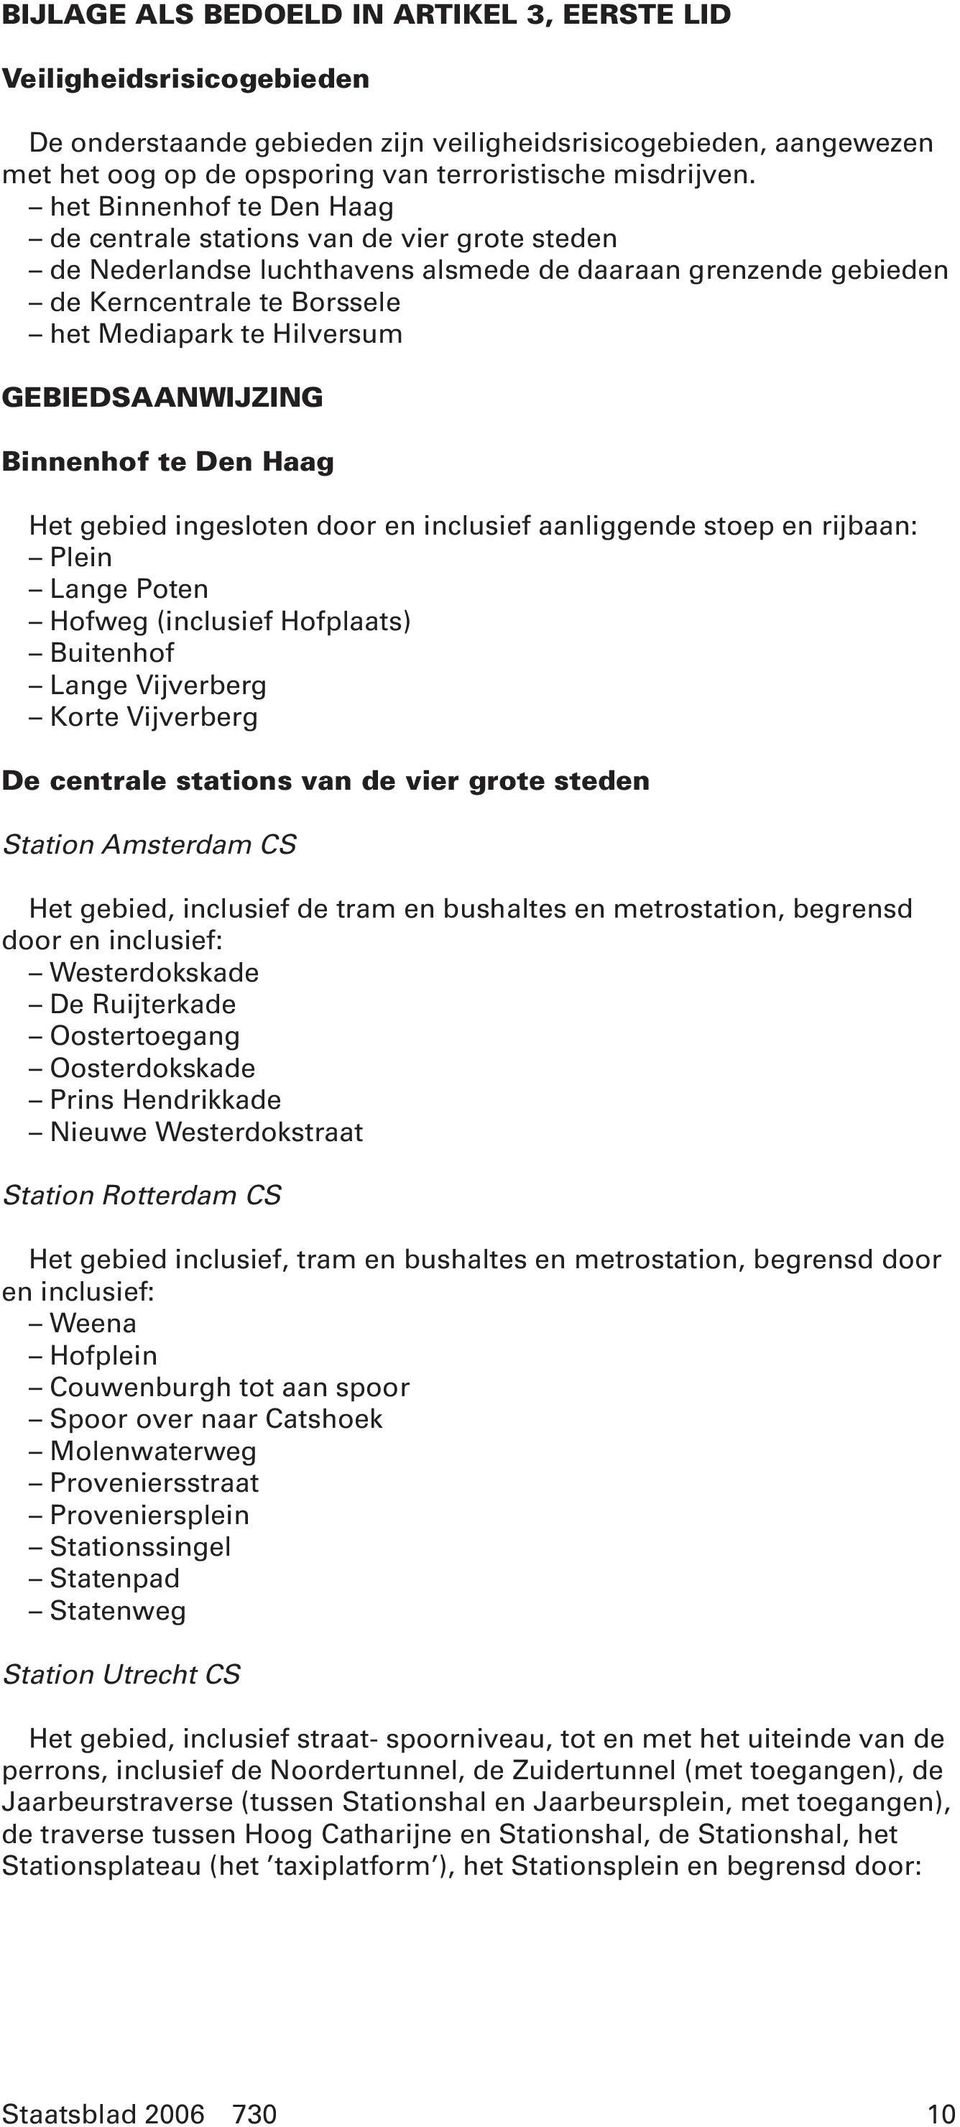 GEBIEDSAANWIJZING Binnenhof te Den Haag Het gebied ingesloten door en inclusief aanliggende stoep en rijbaan: Plein Lange Poten Hofweg (inclusief Hofplaats) Buitenhof Lange Vijverberg Korte